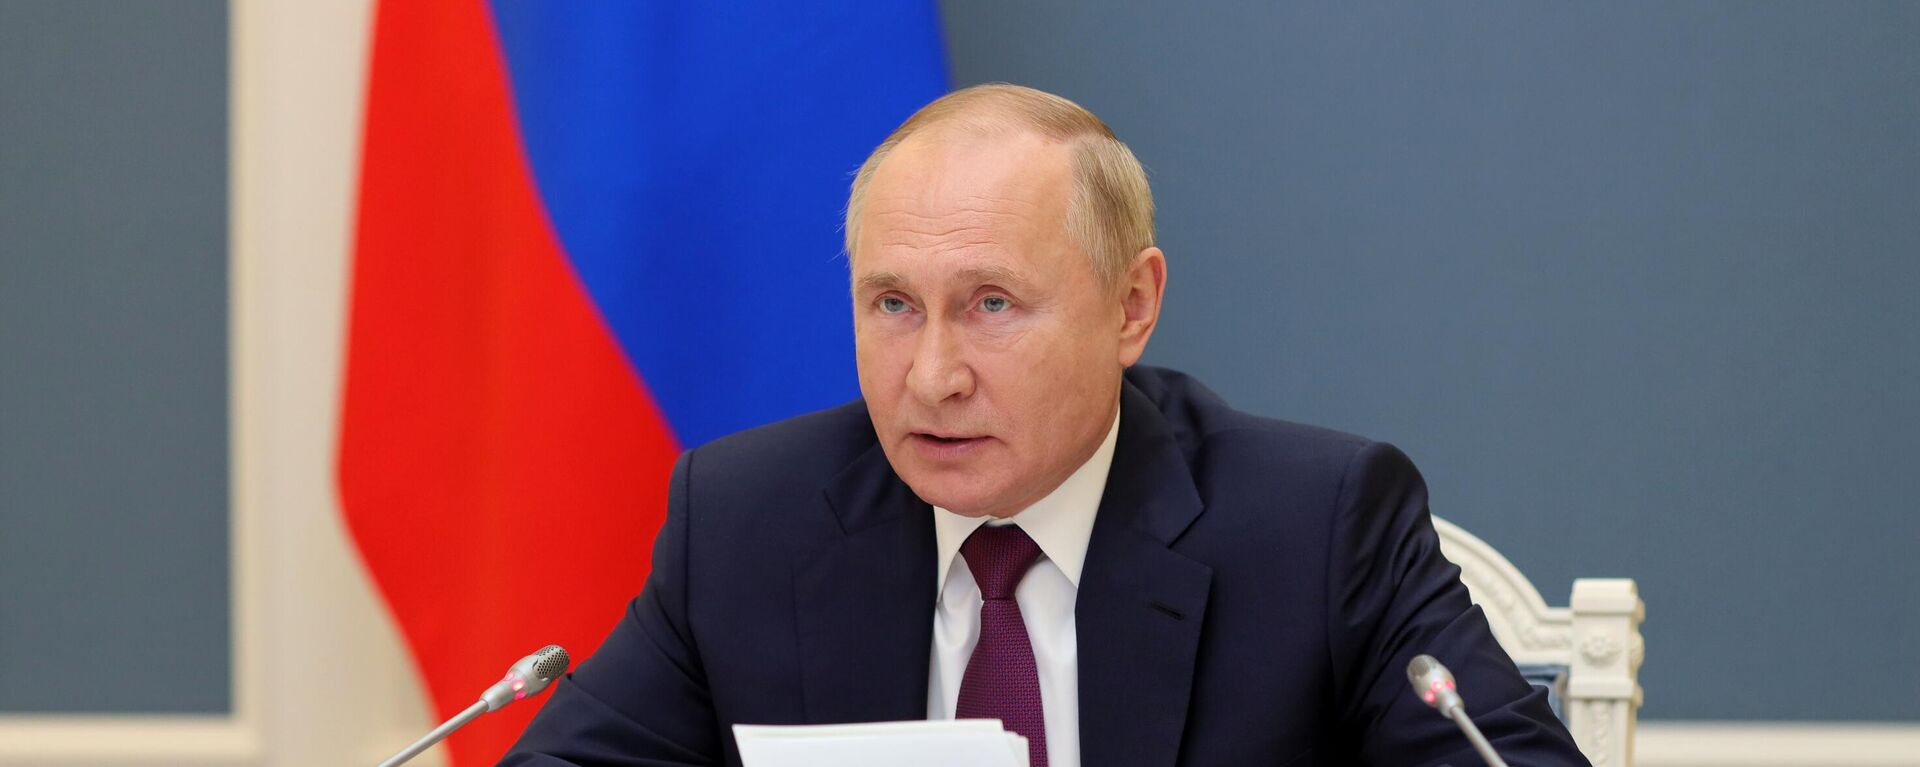 Президент РФ В. Путин принял участие в саммите Группы двадцати - Sputnik Абхазия, 1920, 31.10.2021